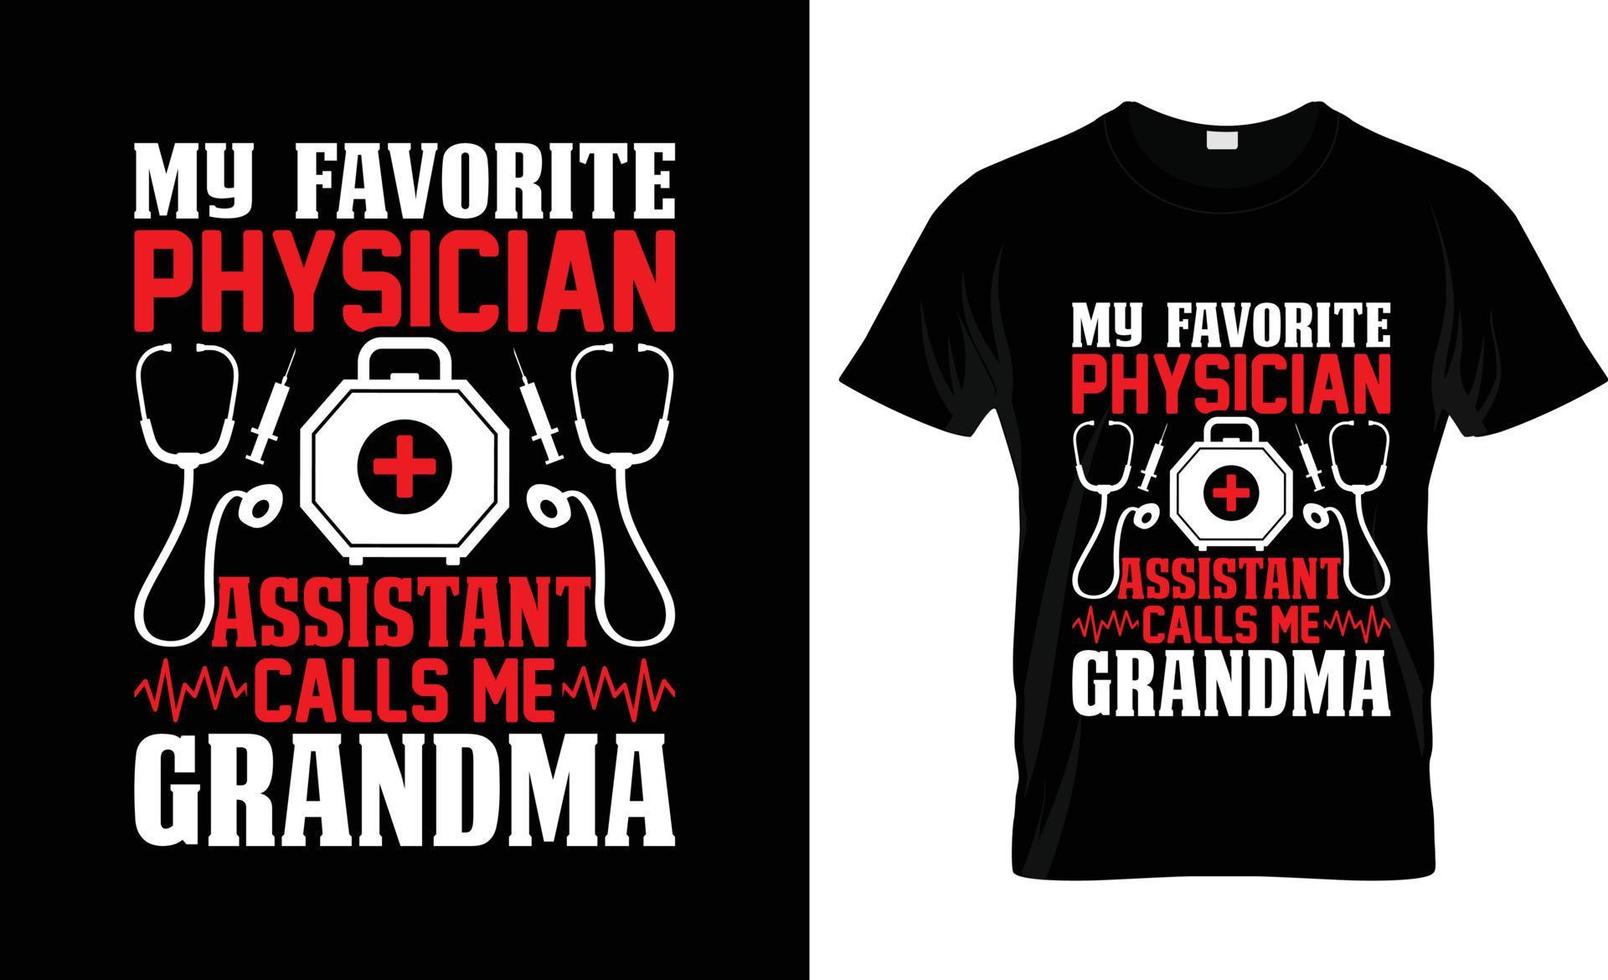 Arzt-T-Shirt-Design, Arzt-T-Shirt-Slogan und Bekleidungsdesign, Arzttypografie, Arztvektor, Arztillustration vektor